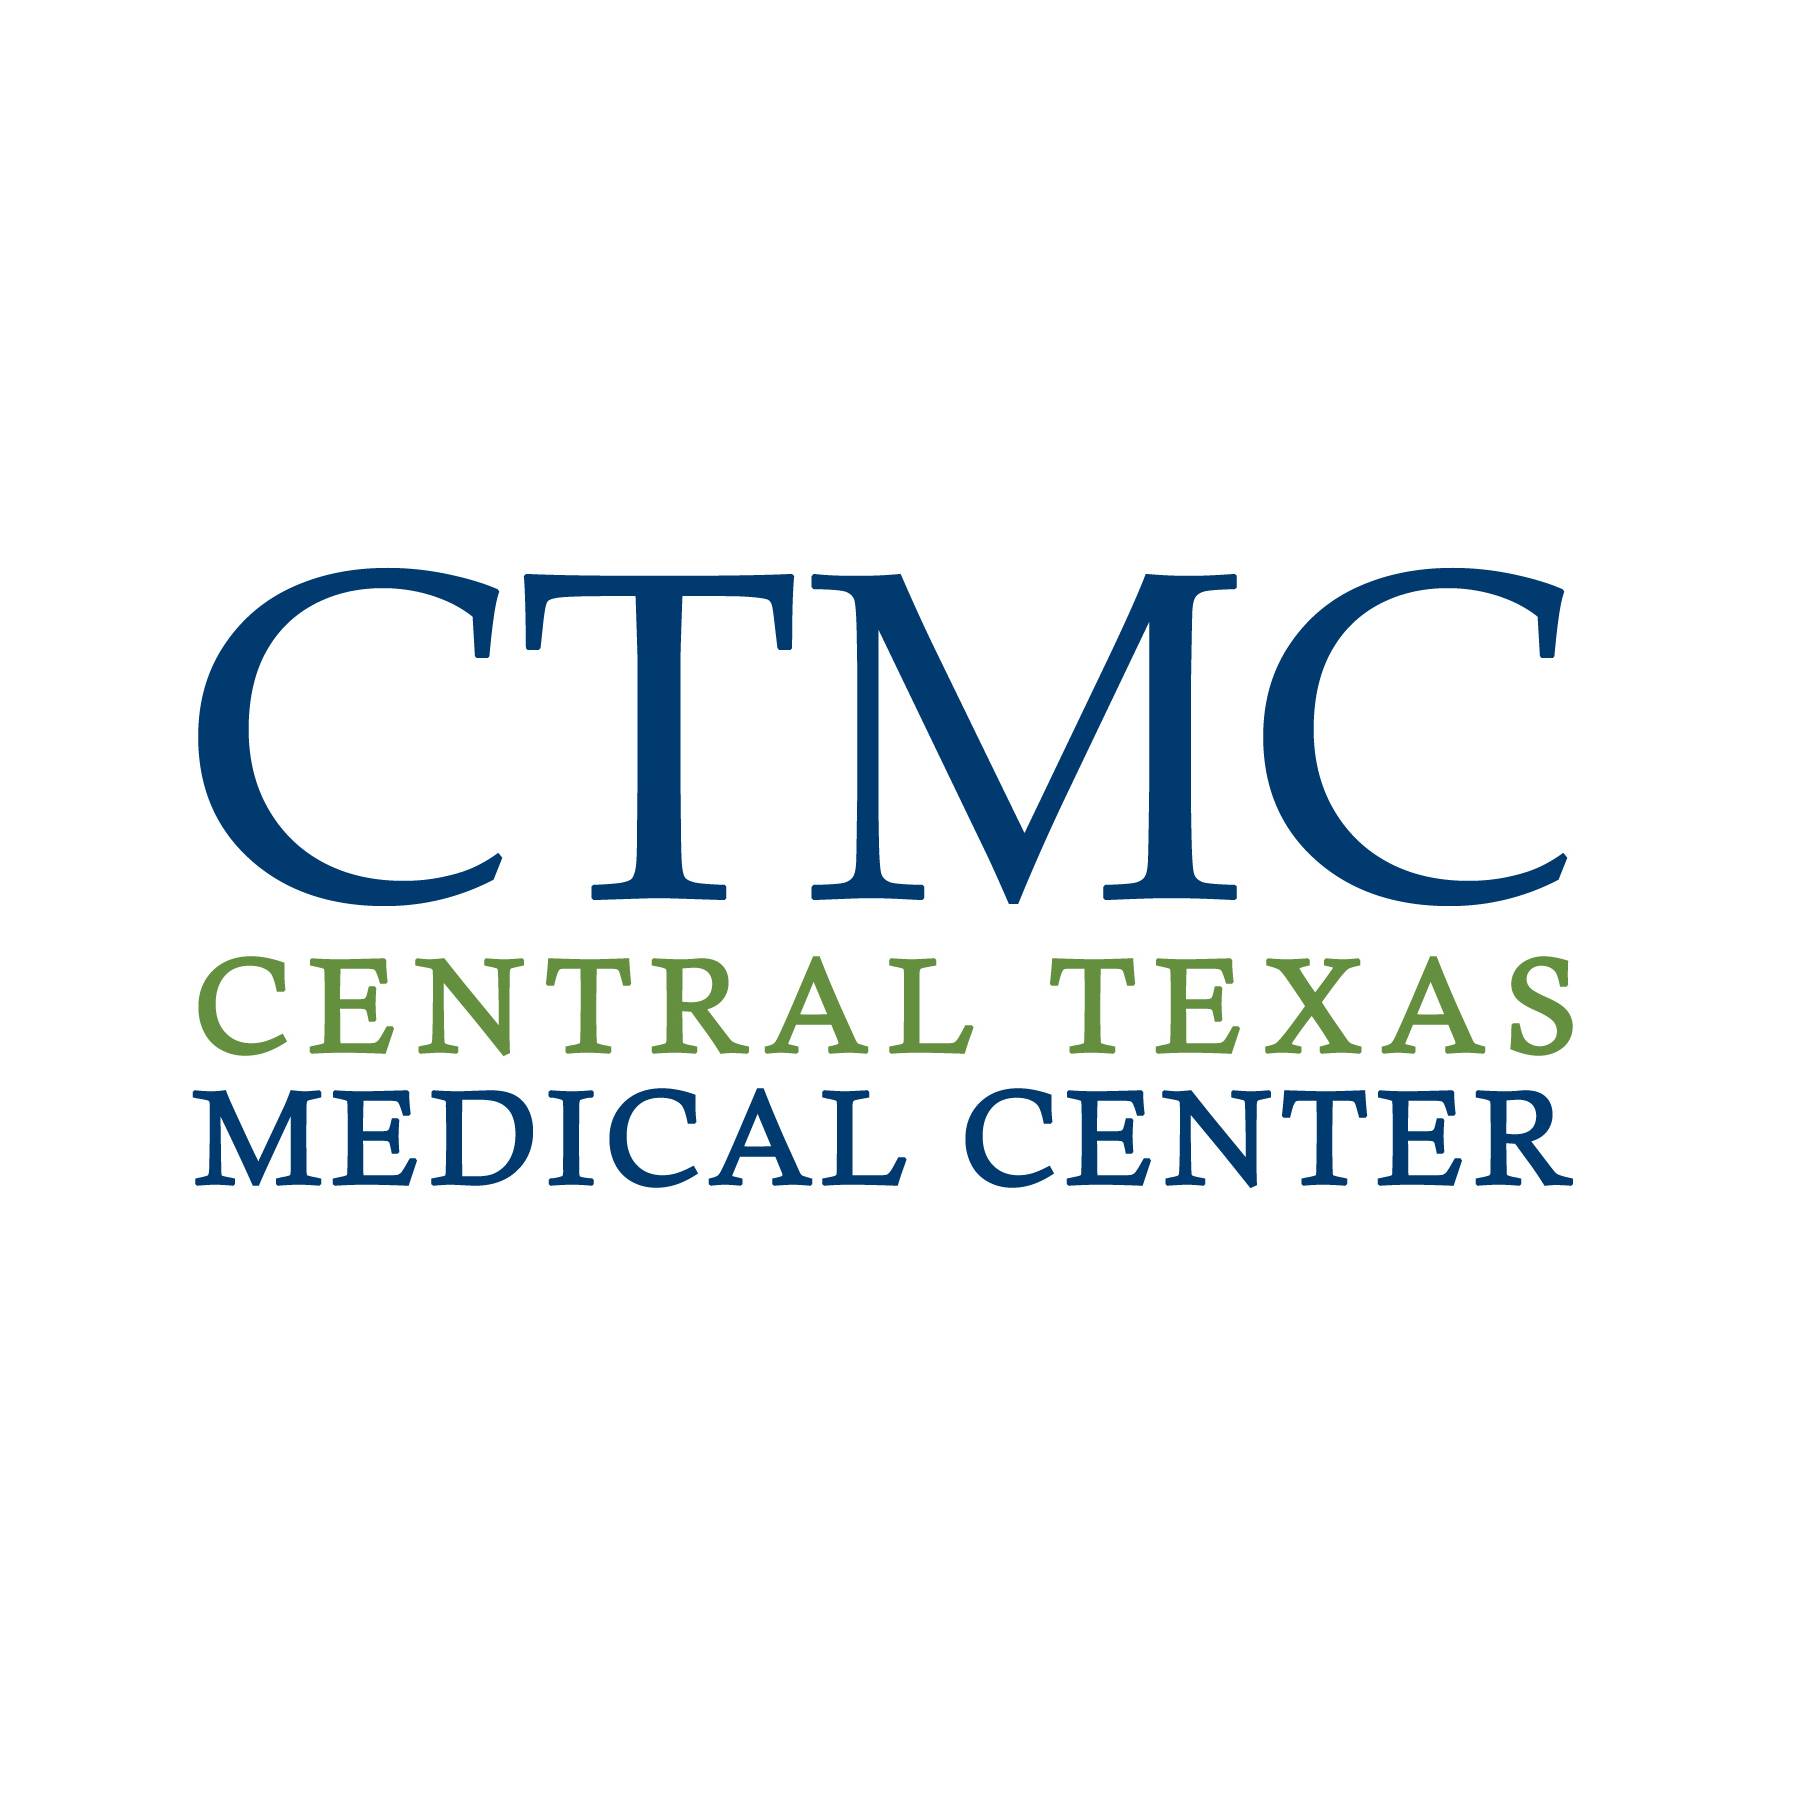 Central Texas Medical Center